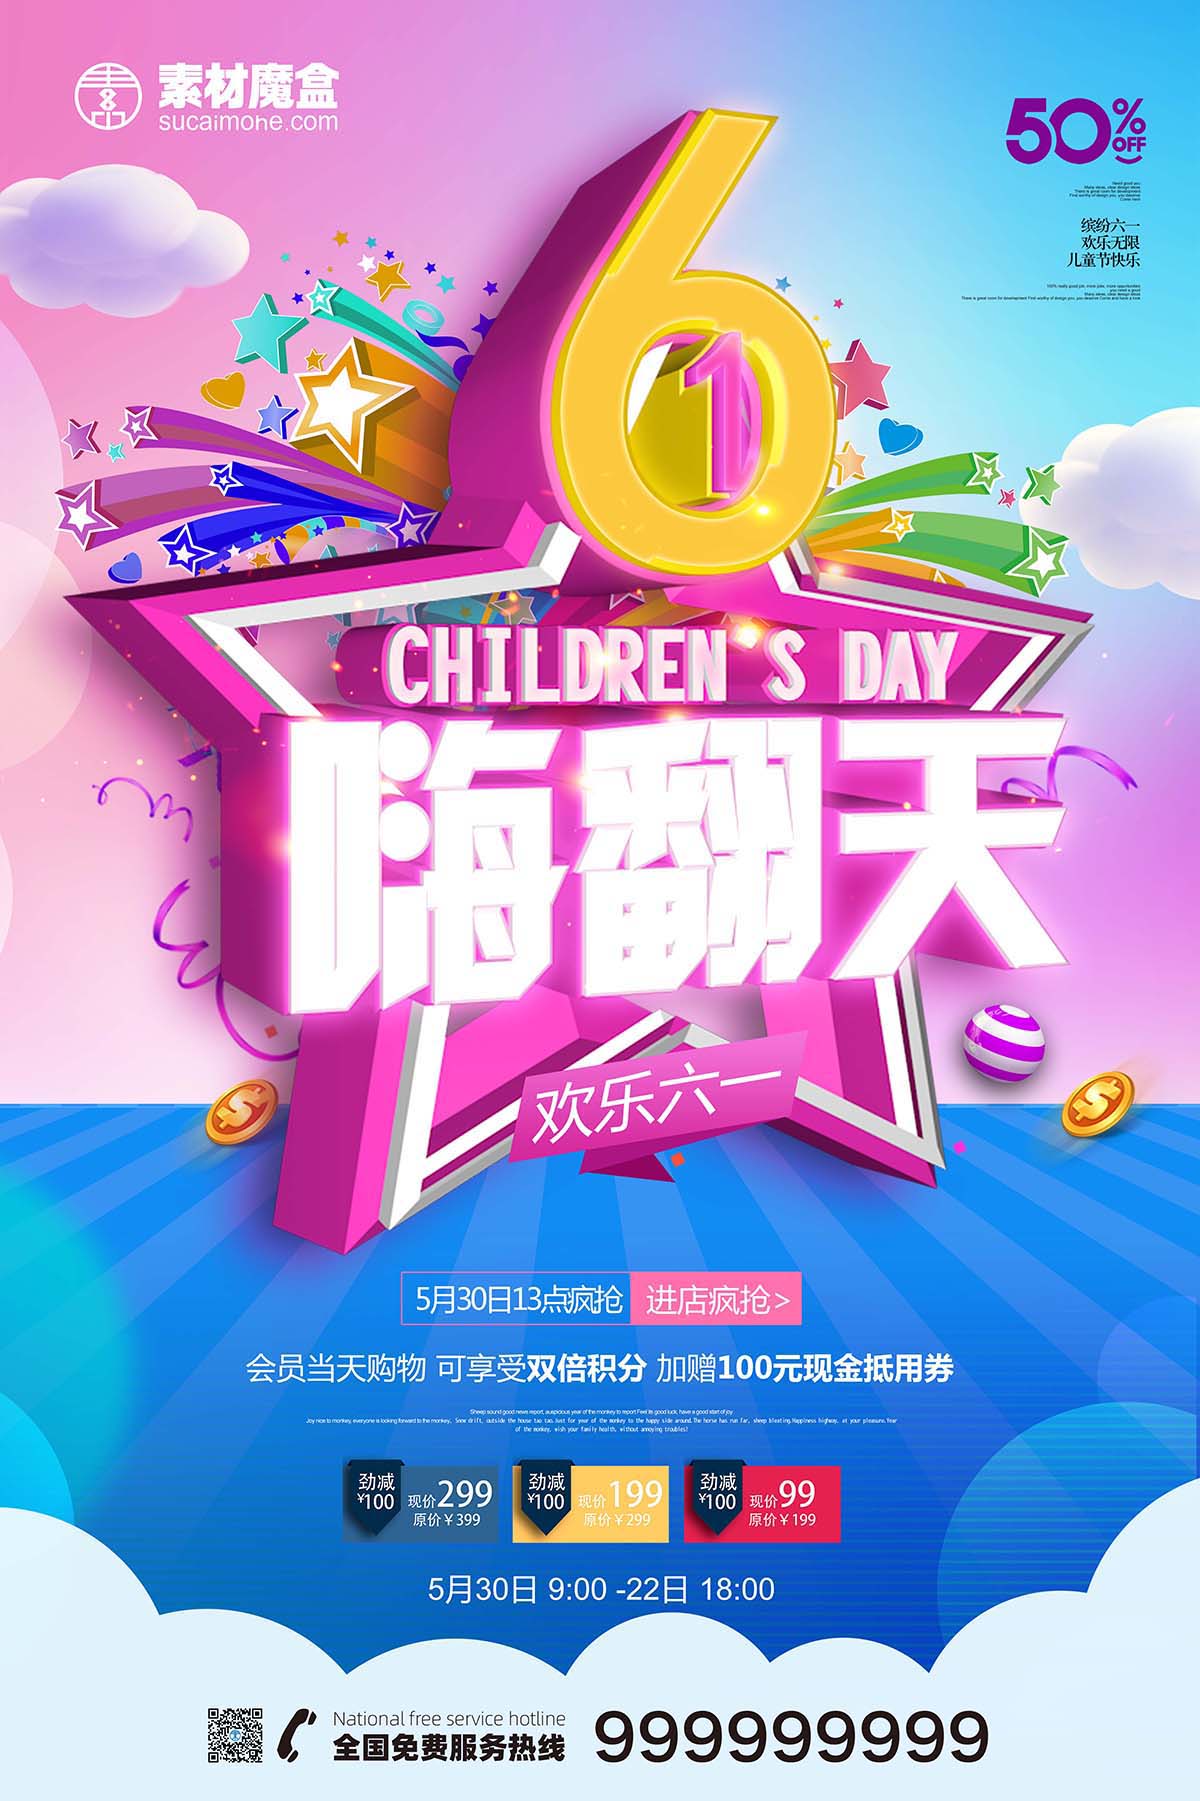 61六一儿童节嗨翻天立体创意海报设计PSD源文件